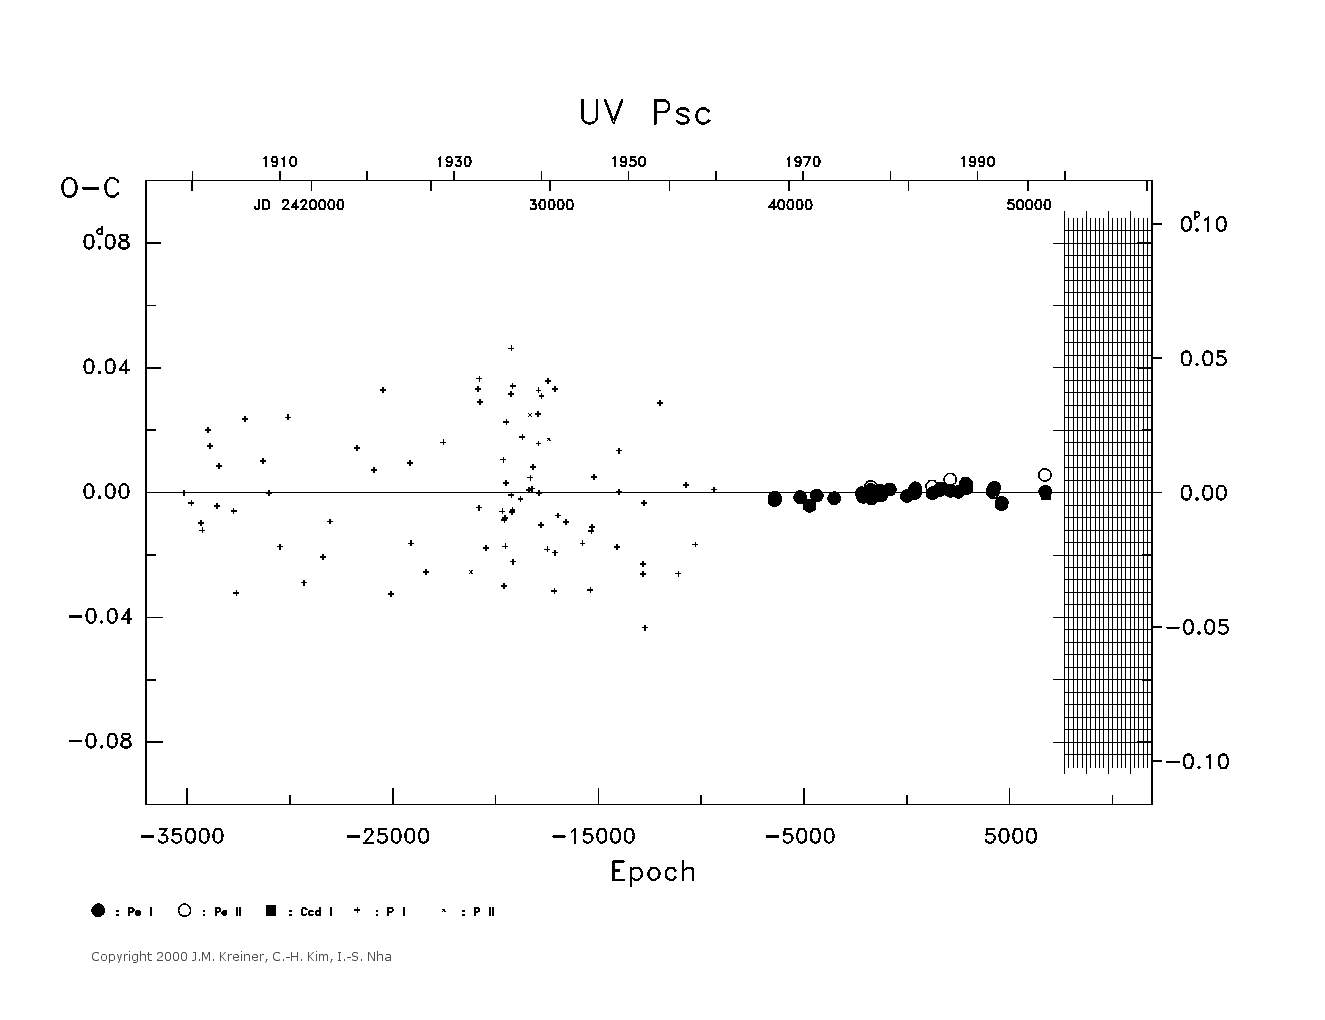 [IMAGE: large UV PSC O-C diagram]